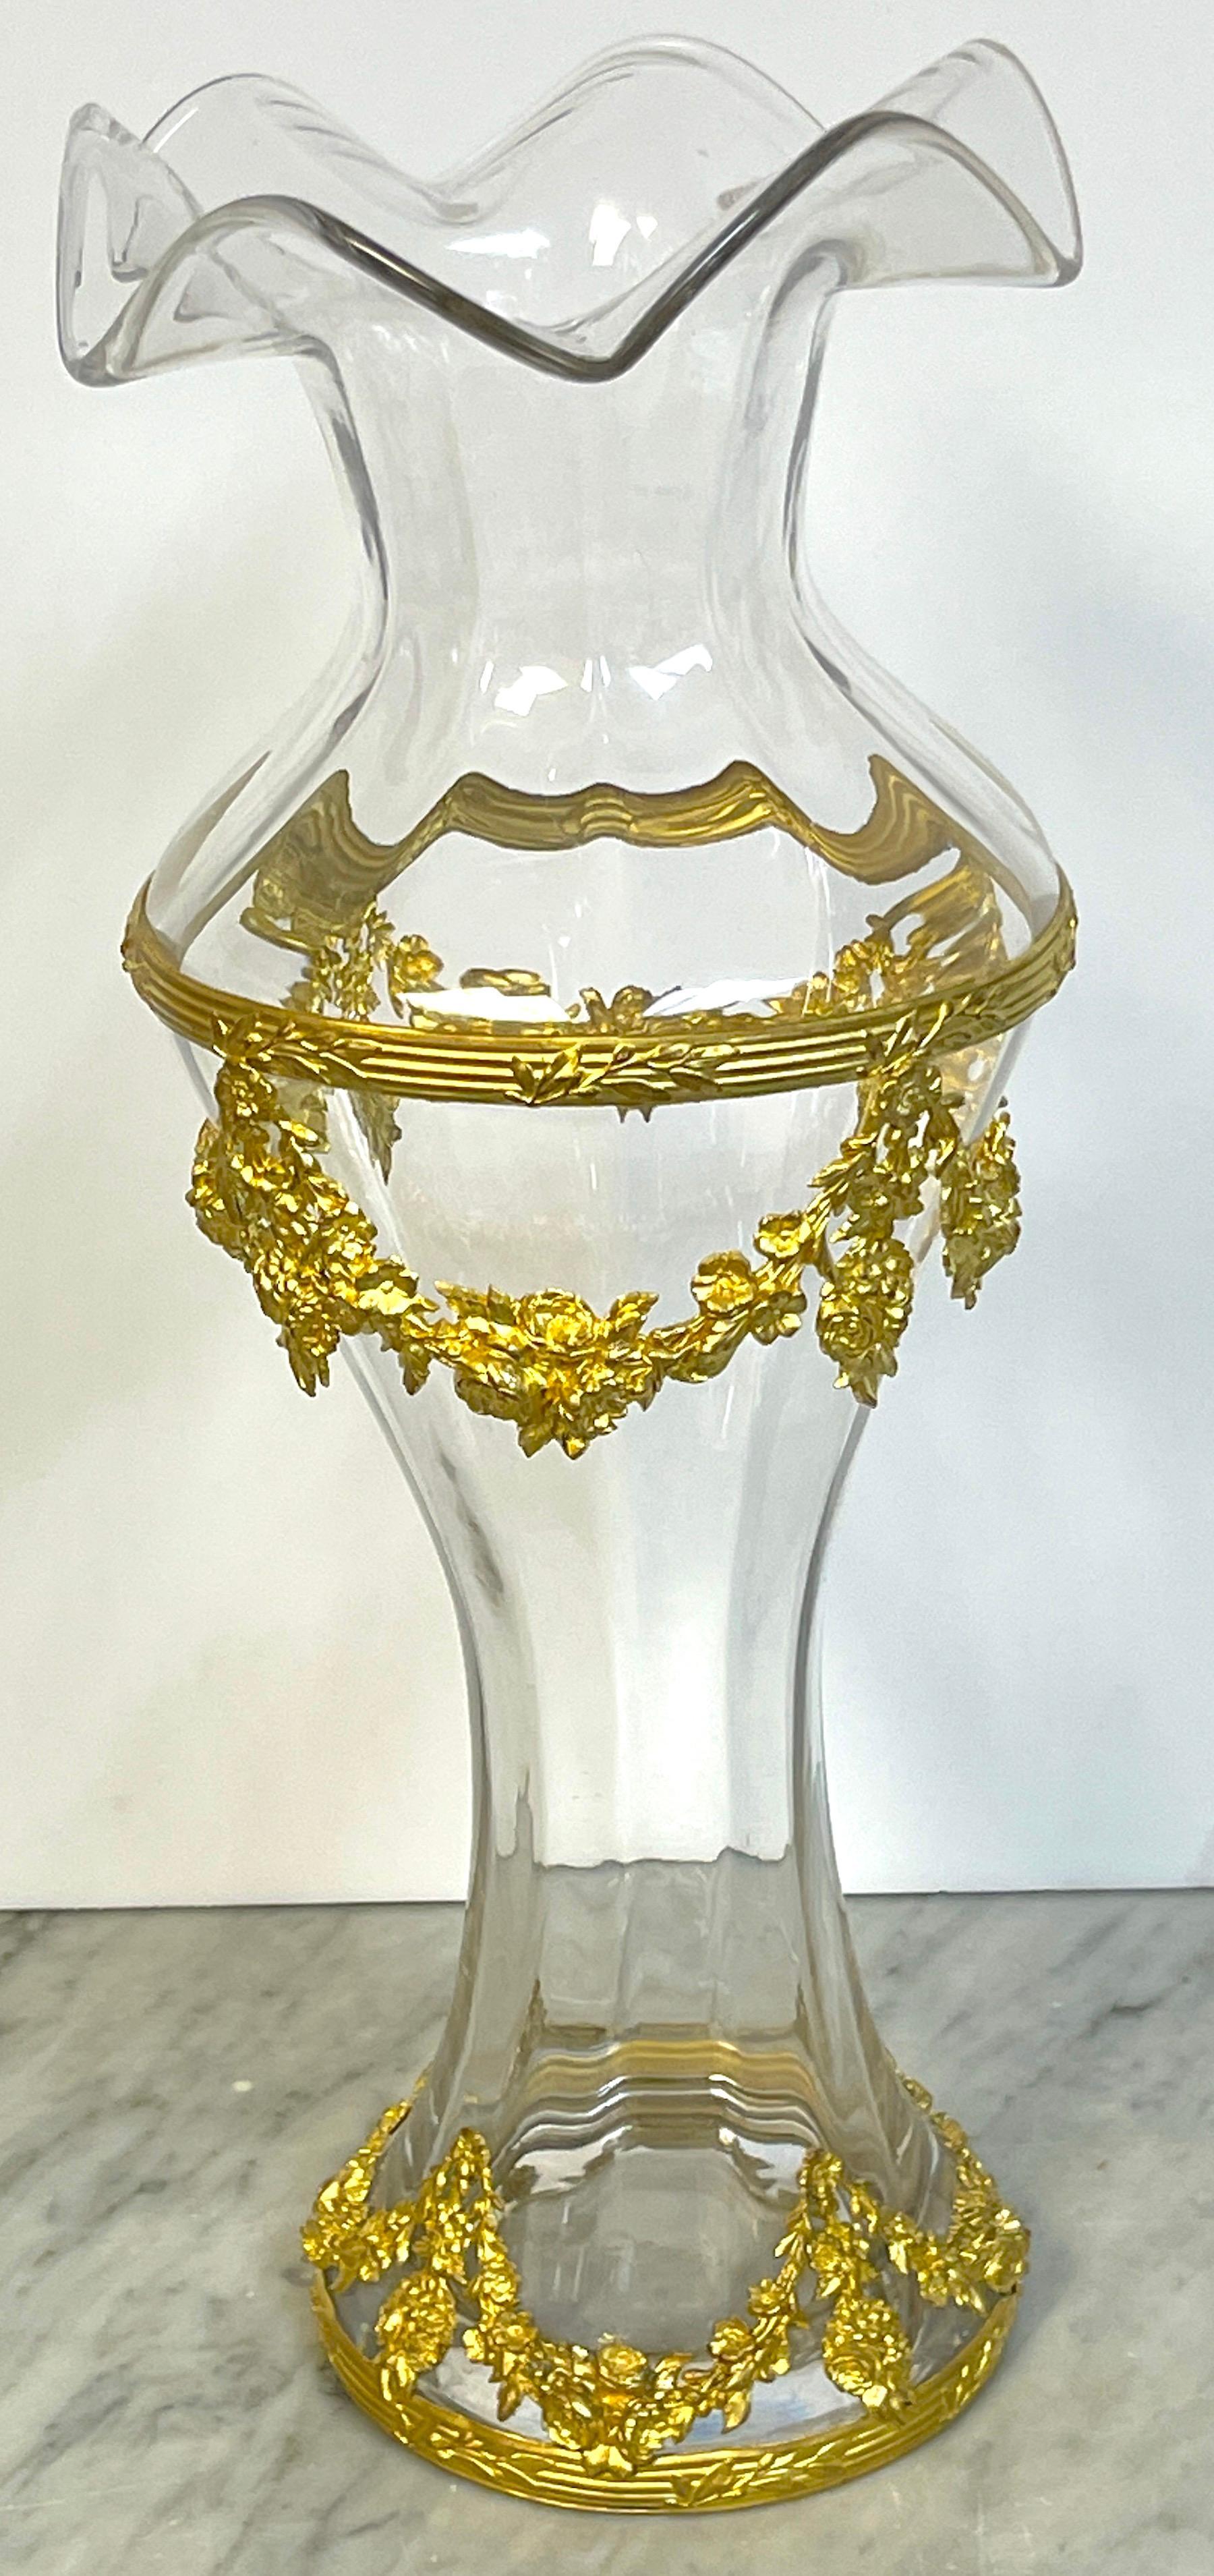 Grand vase en cristal de Sèvres signé Belle Époque, monté sur bronze doré
France, vers le début du 20e siècle

Voici un grand vase en cristal de Sèvres, signé Belle Époque et monté sur bronze doré, originaire de France et datant du début du XXe